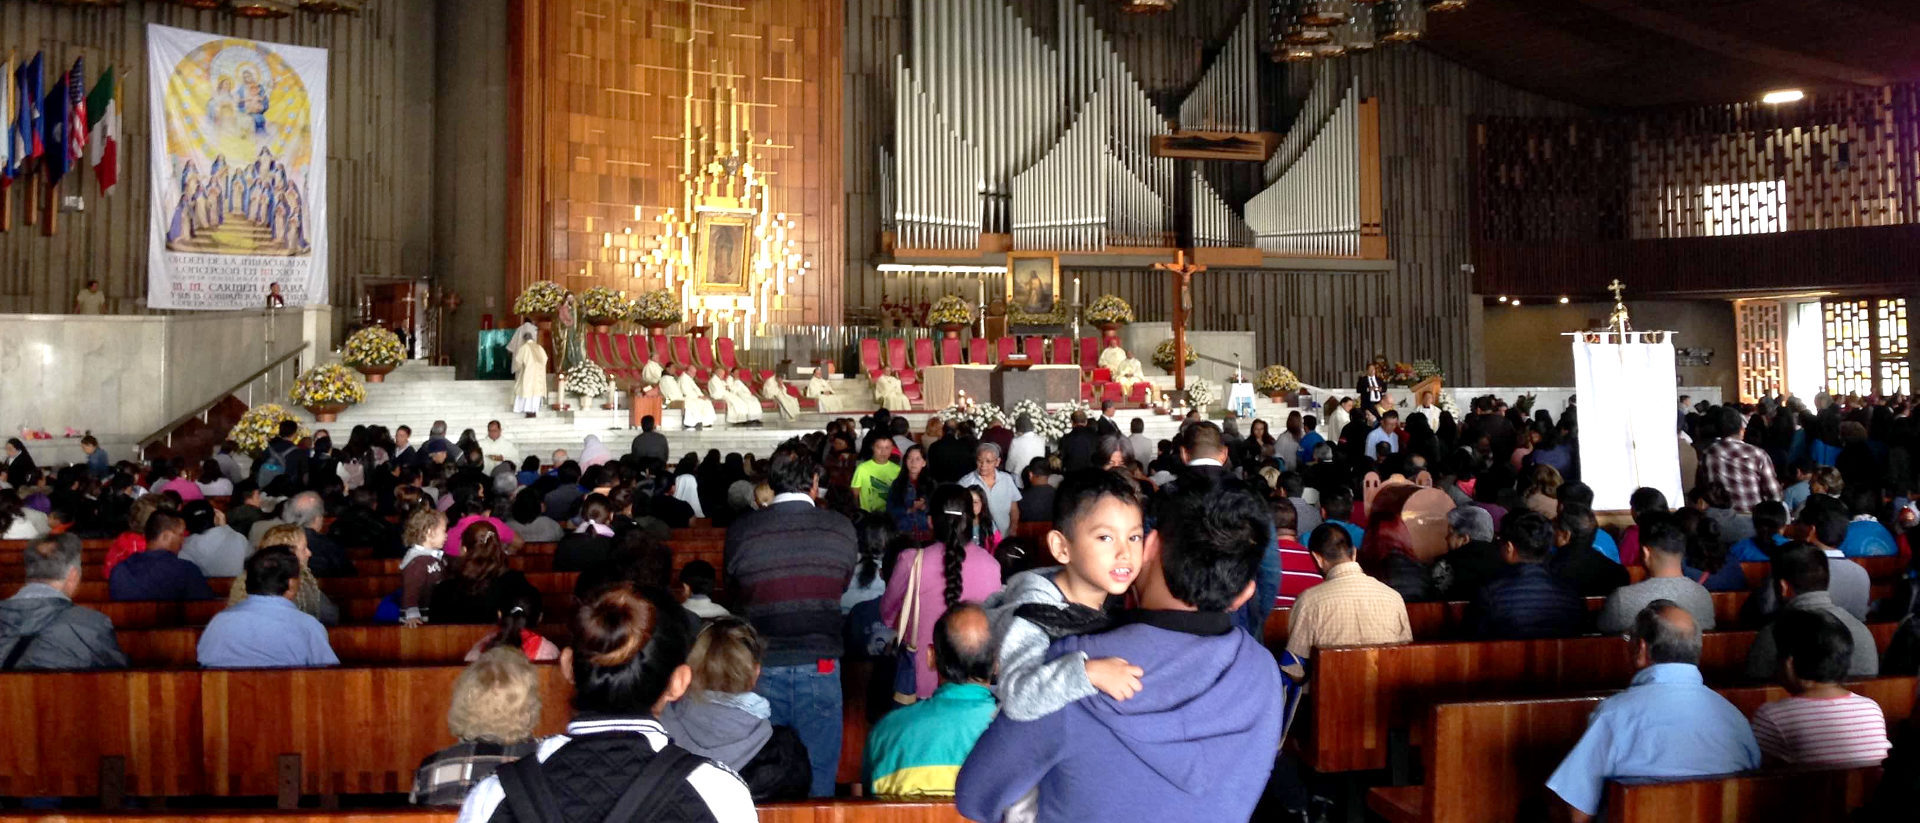 Festgottesdienst in der Wallfahrtskirche der Virgen de Guadalupe auf einer Anhöhe über Ciudad de México